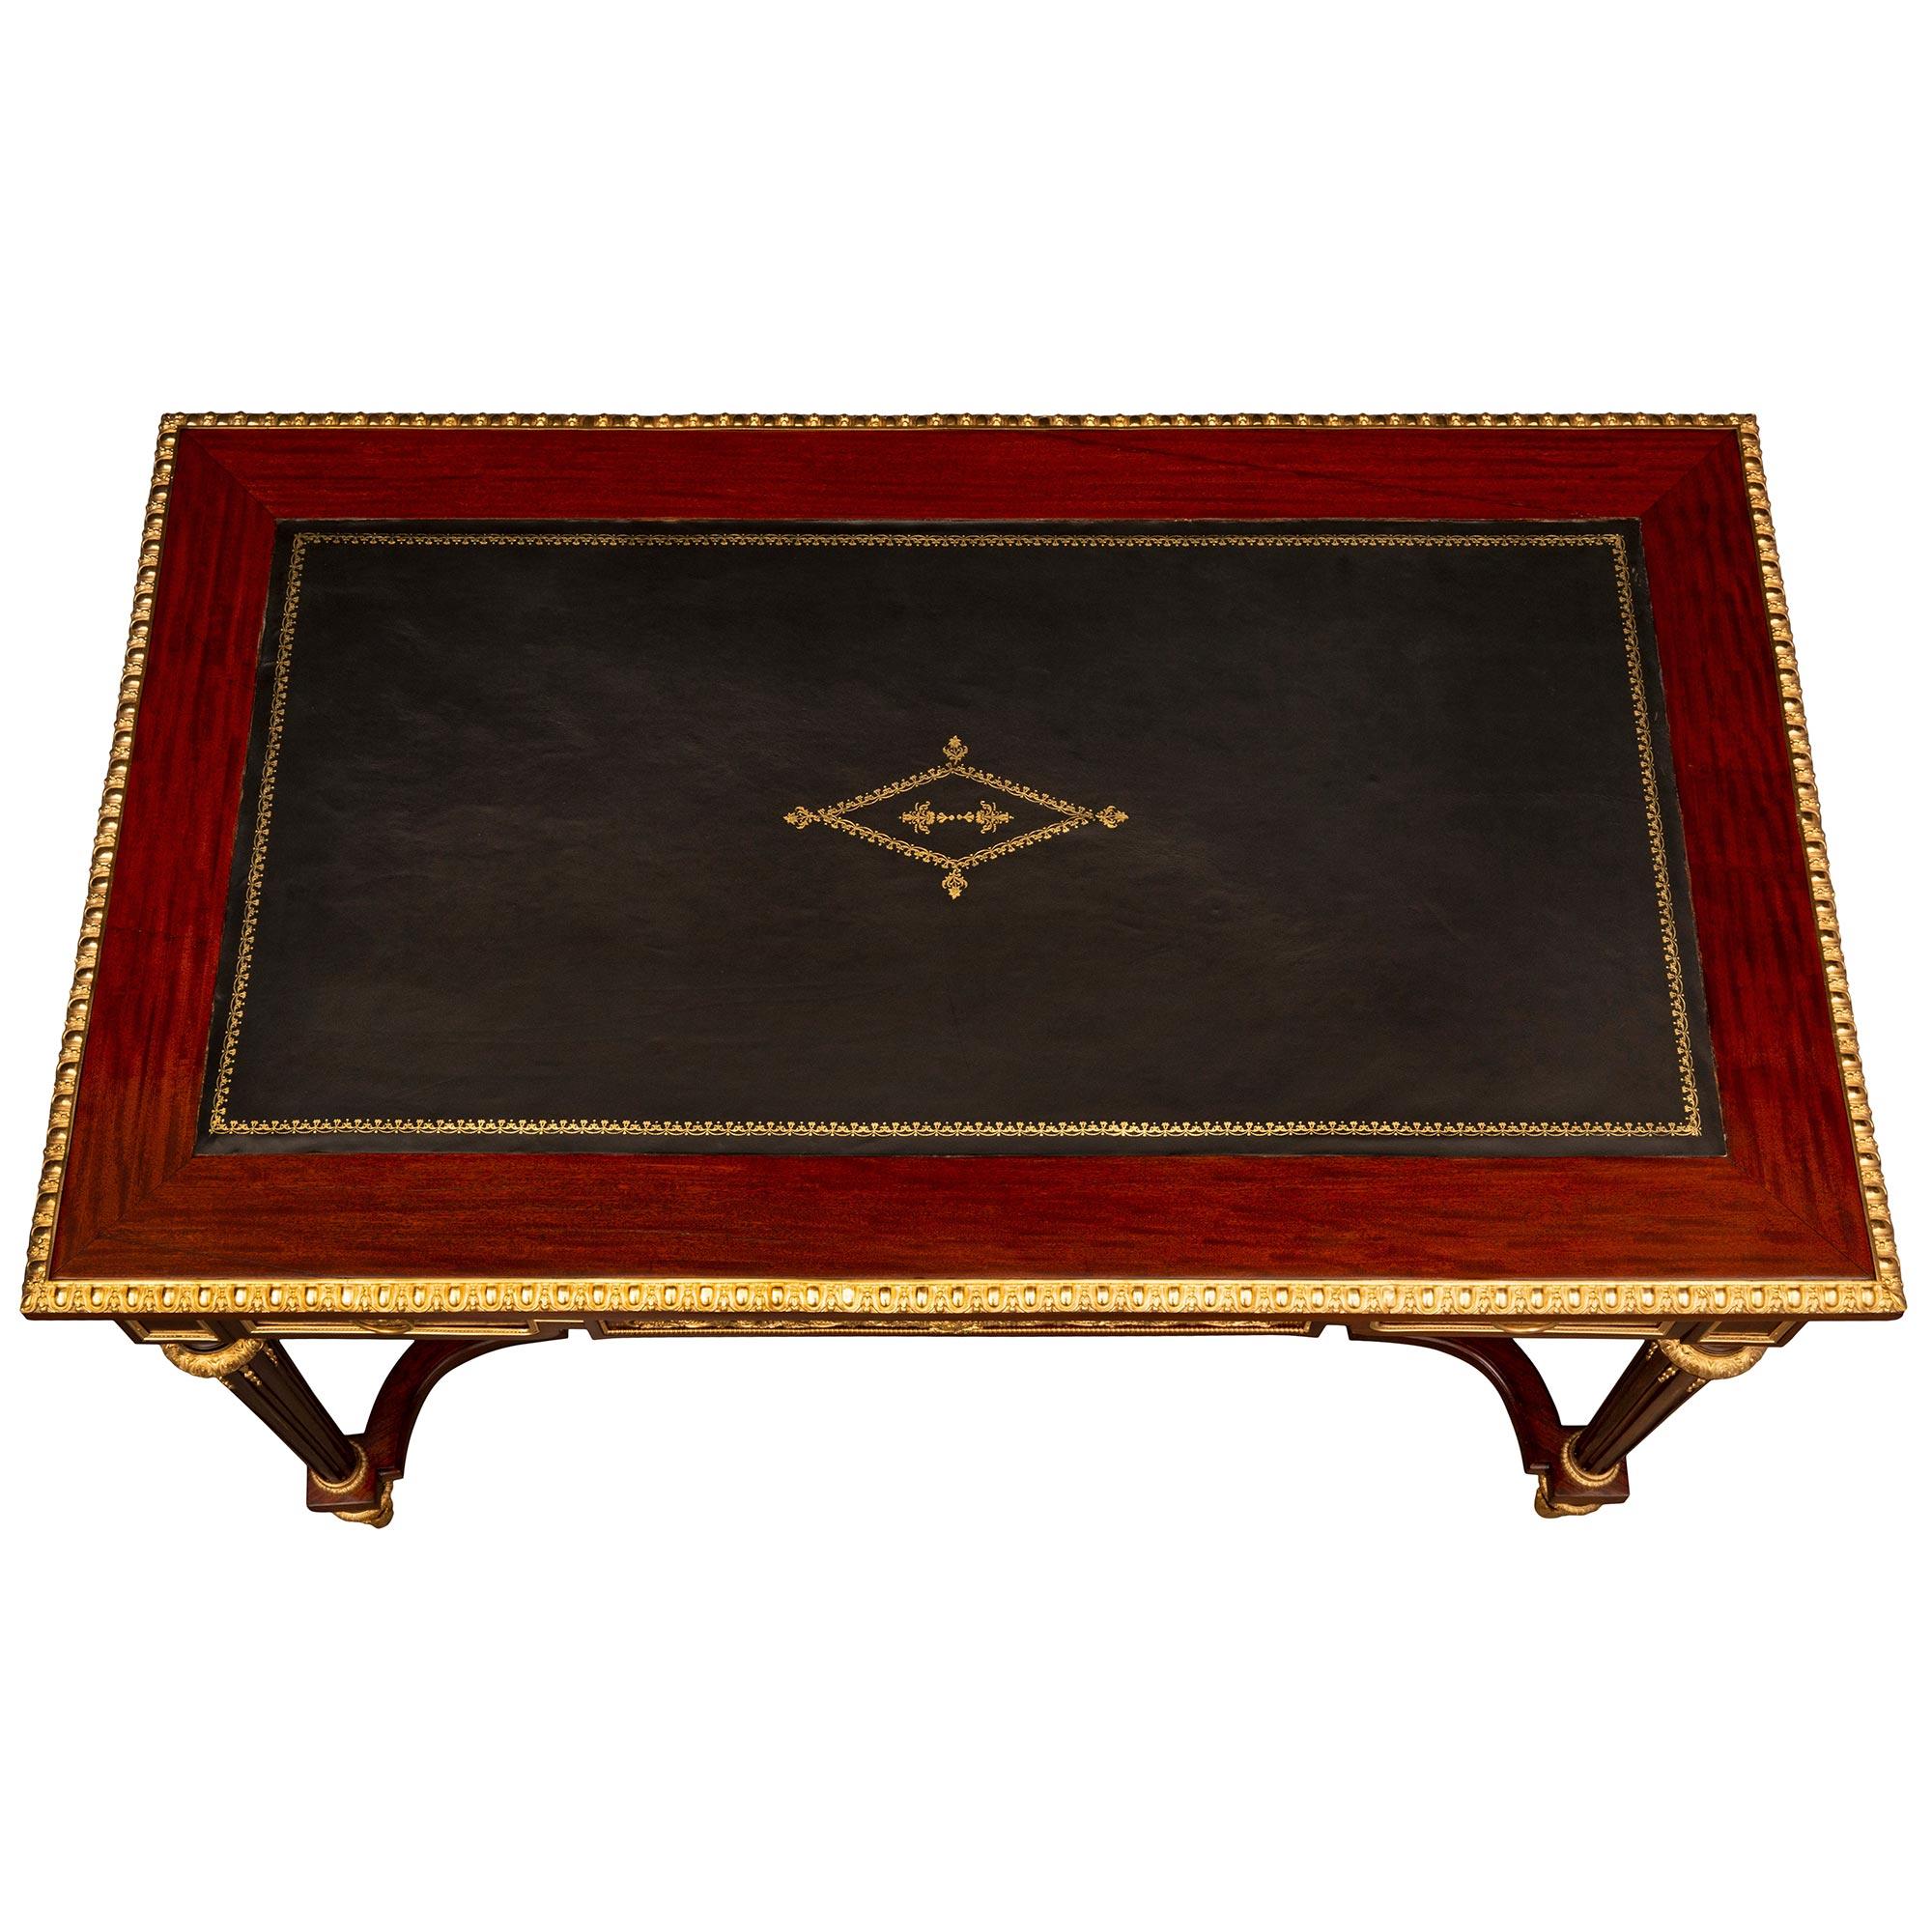 Ein auffallender und sehr eleganter französischer Schreibtisch aus dem 19. Jahrhundert im Stil Louis XVI. aus Mahagoni und Ormolu. Der Schreibtisch steht auf feinen, topieförmigen Füßen mit auffälligen Akanthusblatt-Sabots aus Ormolu unter schönen,